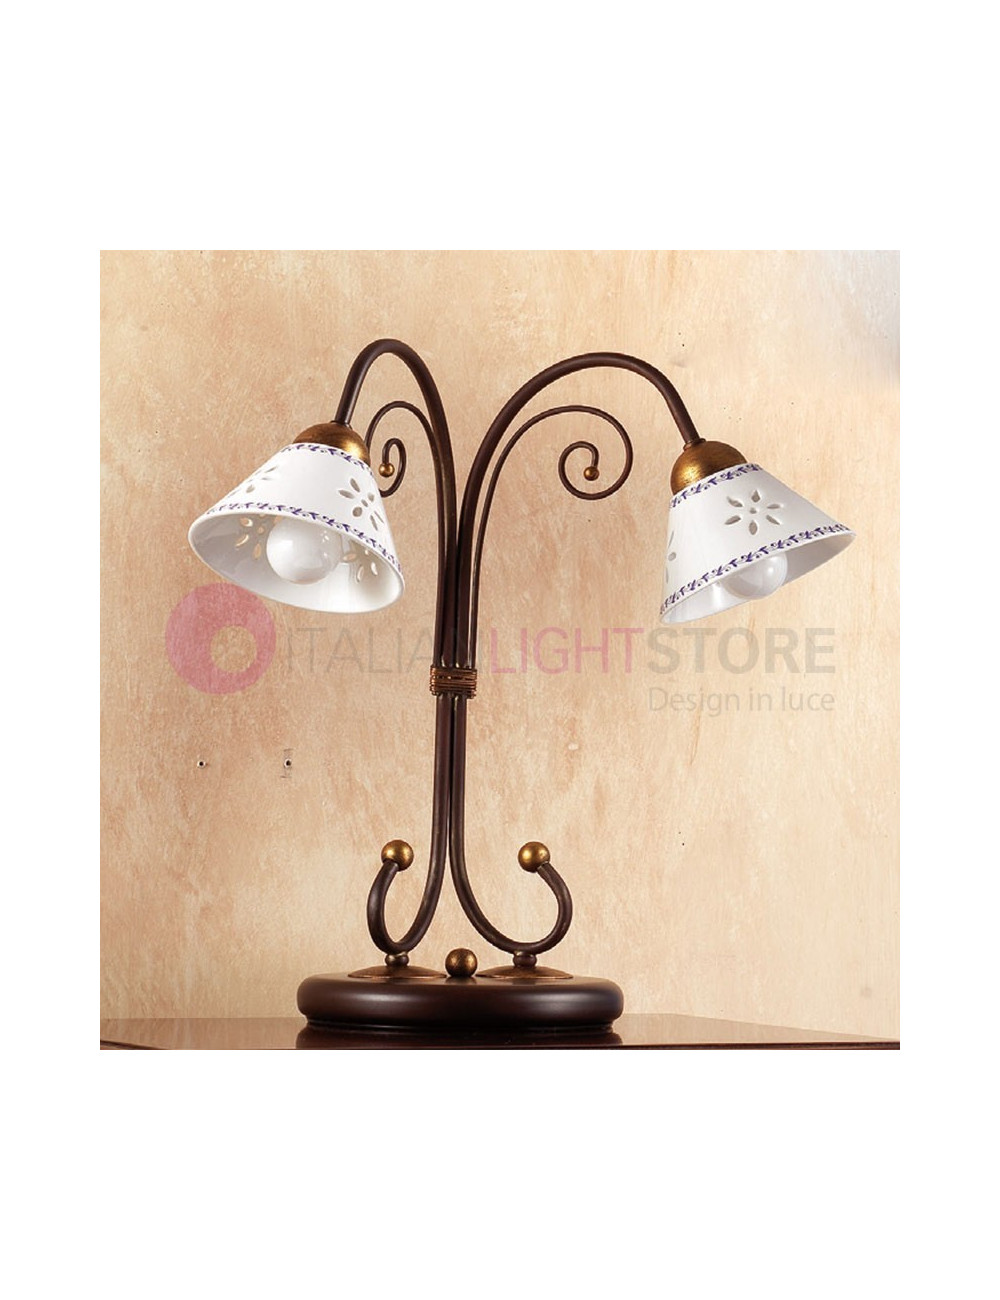 MASSAROSA Rustic-style Table Lamp Ceramic Metal Base italian design